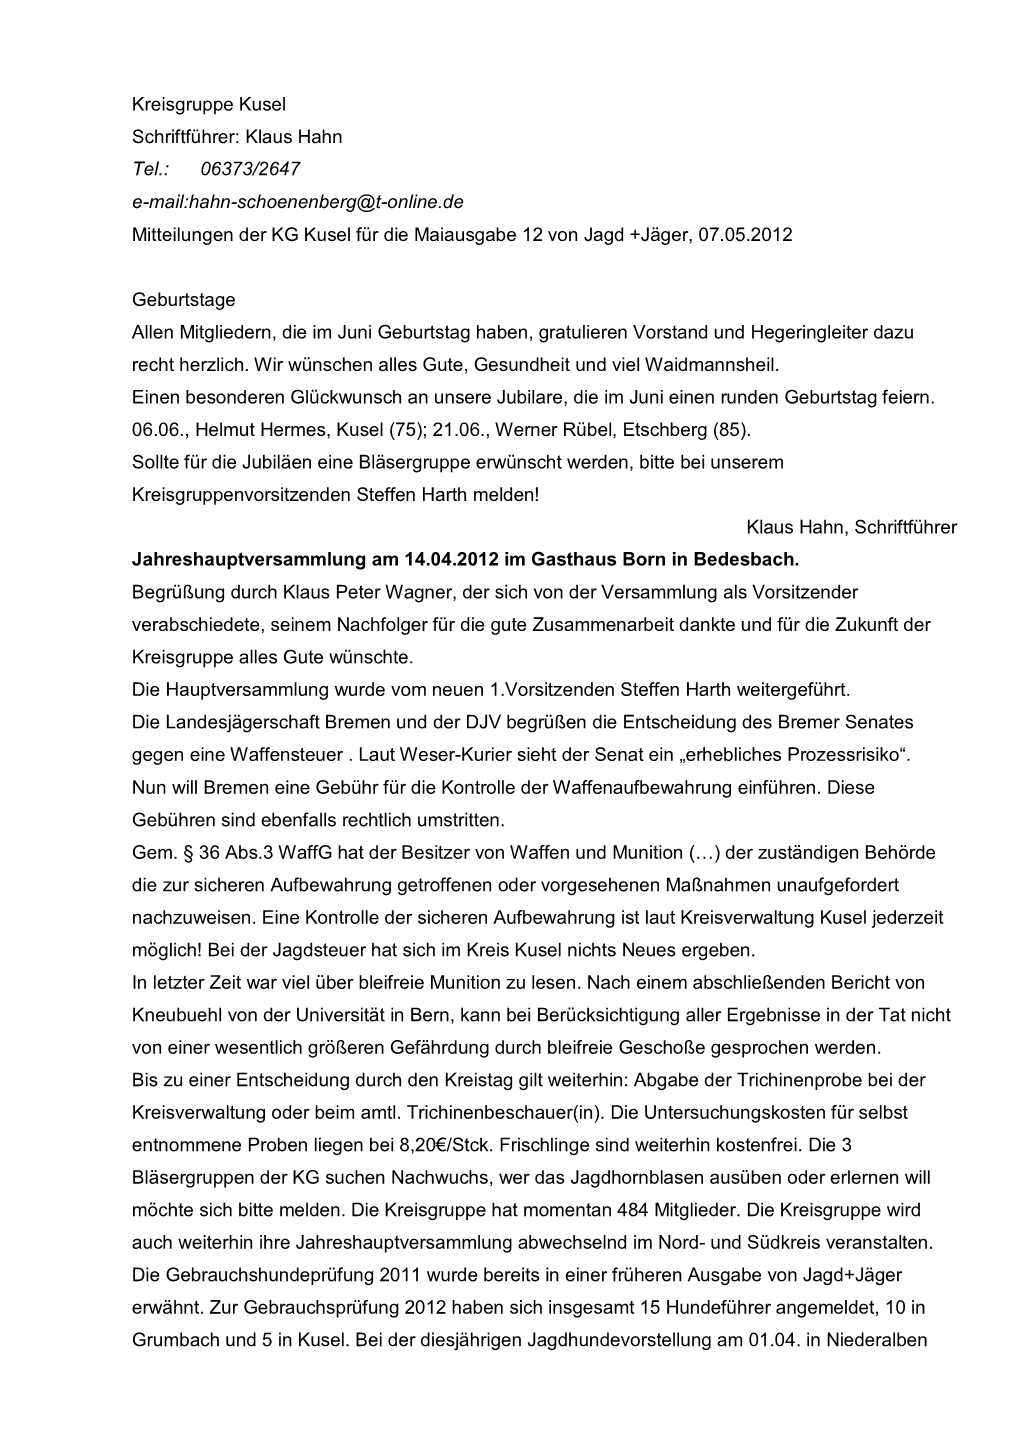 Kreisgruppe Kusel Schriftführer: Klaus Hahn Tel.: 06373/2647 E-Mail